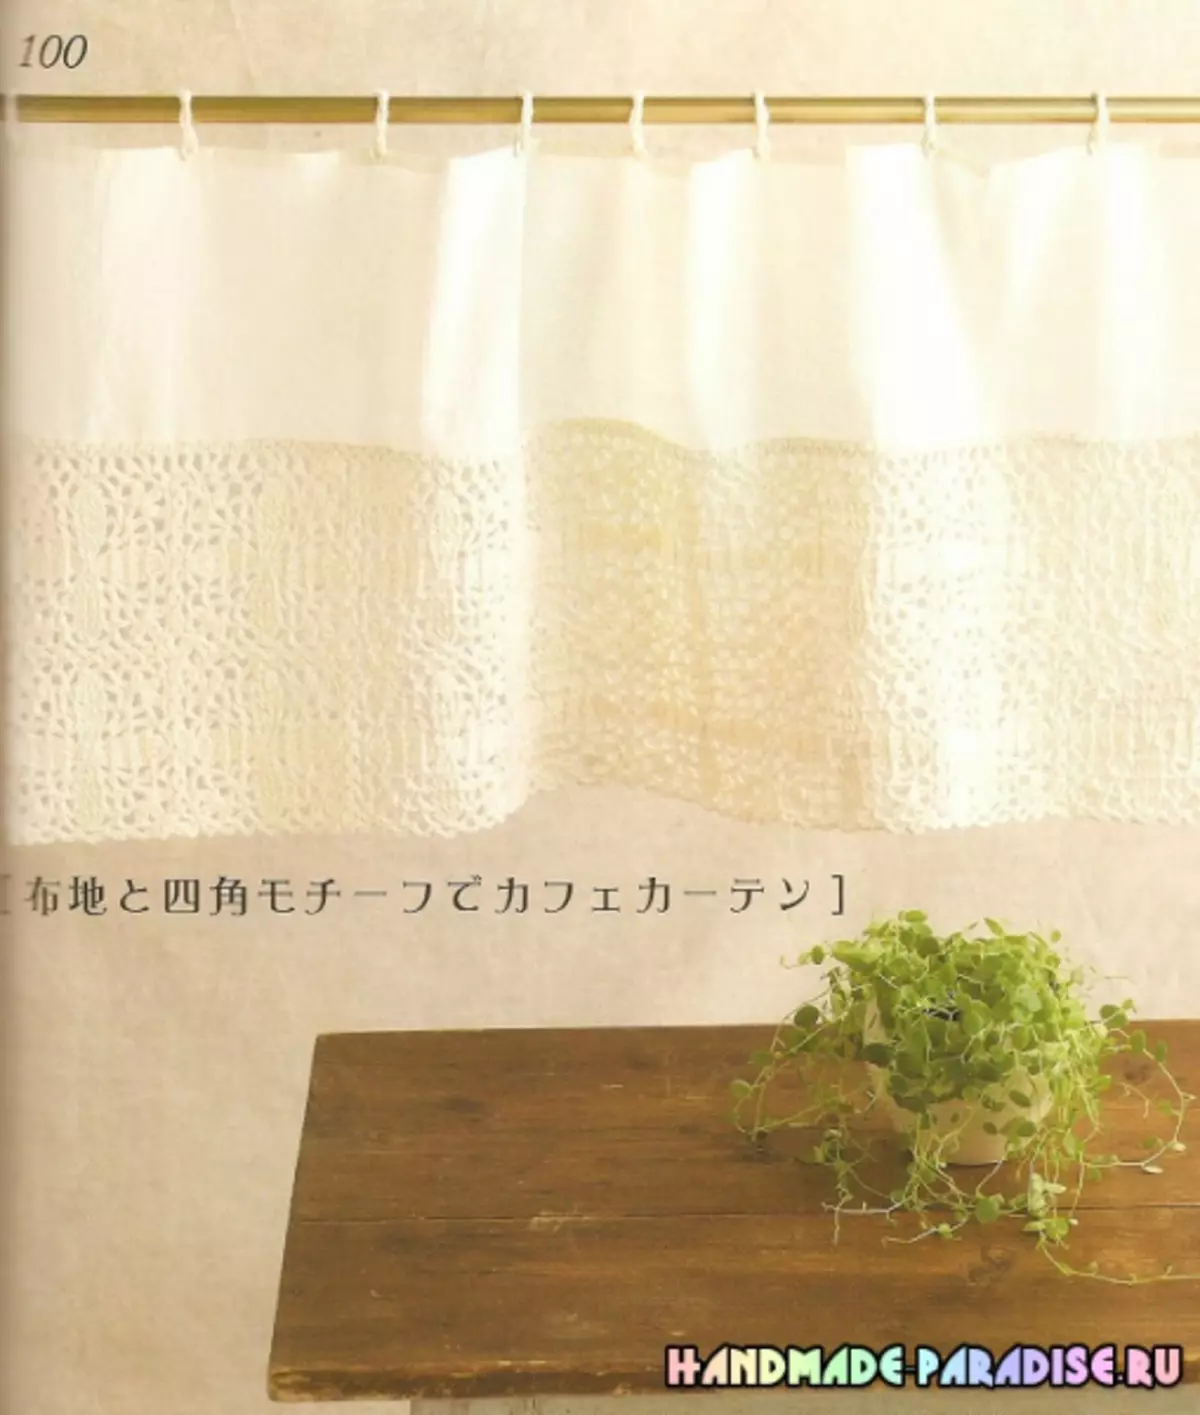 Japanilainen aikakauslehti, jossa on virkattuja järjestelmiä